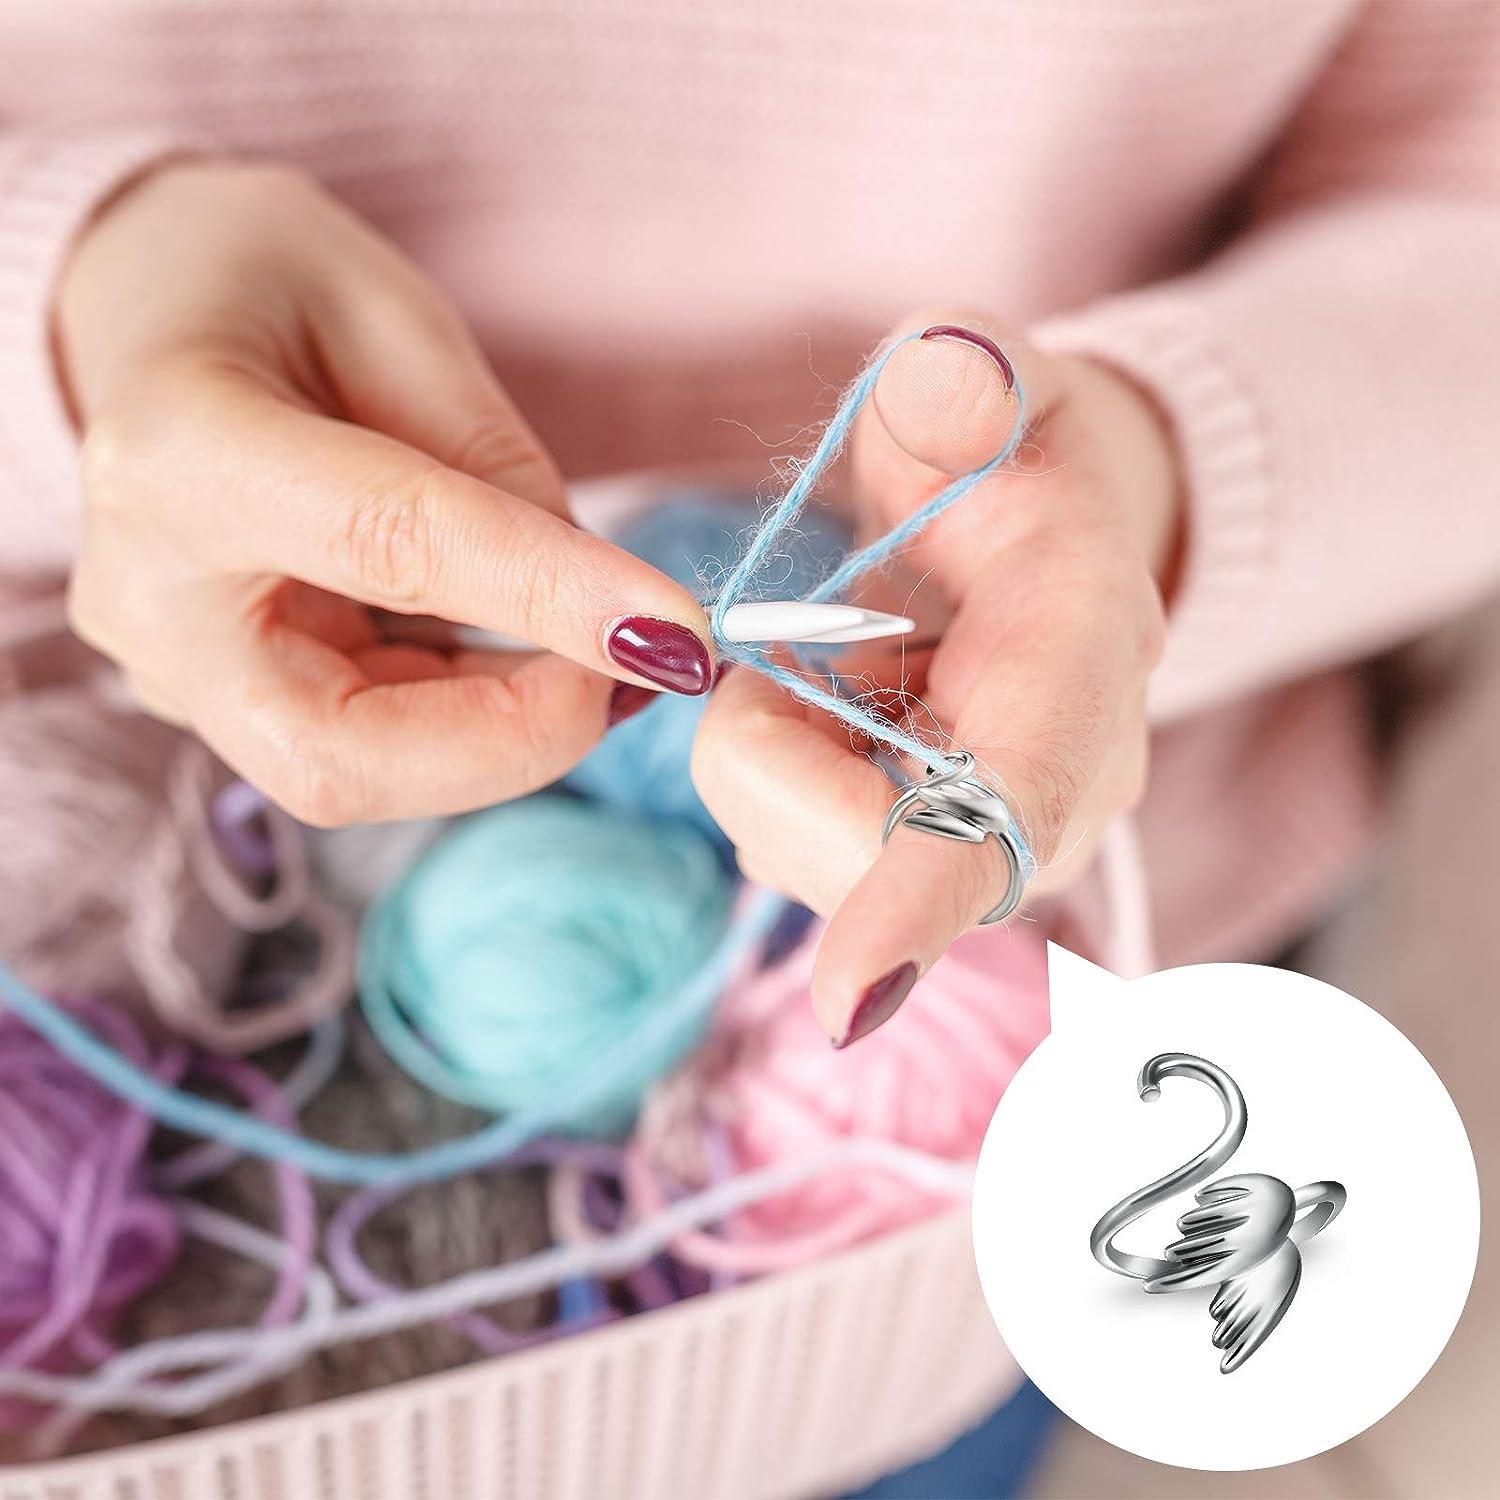 Adjustable Crochet for Finger Braided Knitting Yarn Tension Rings